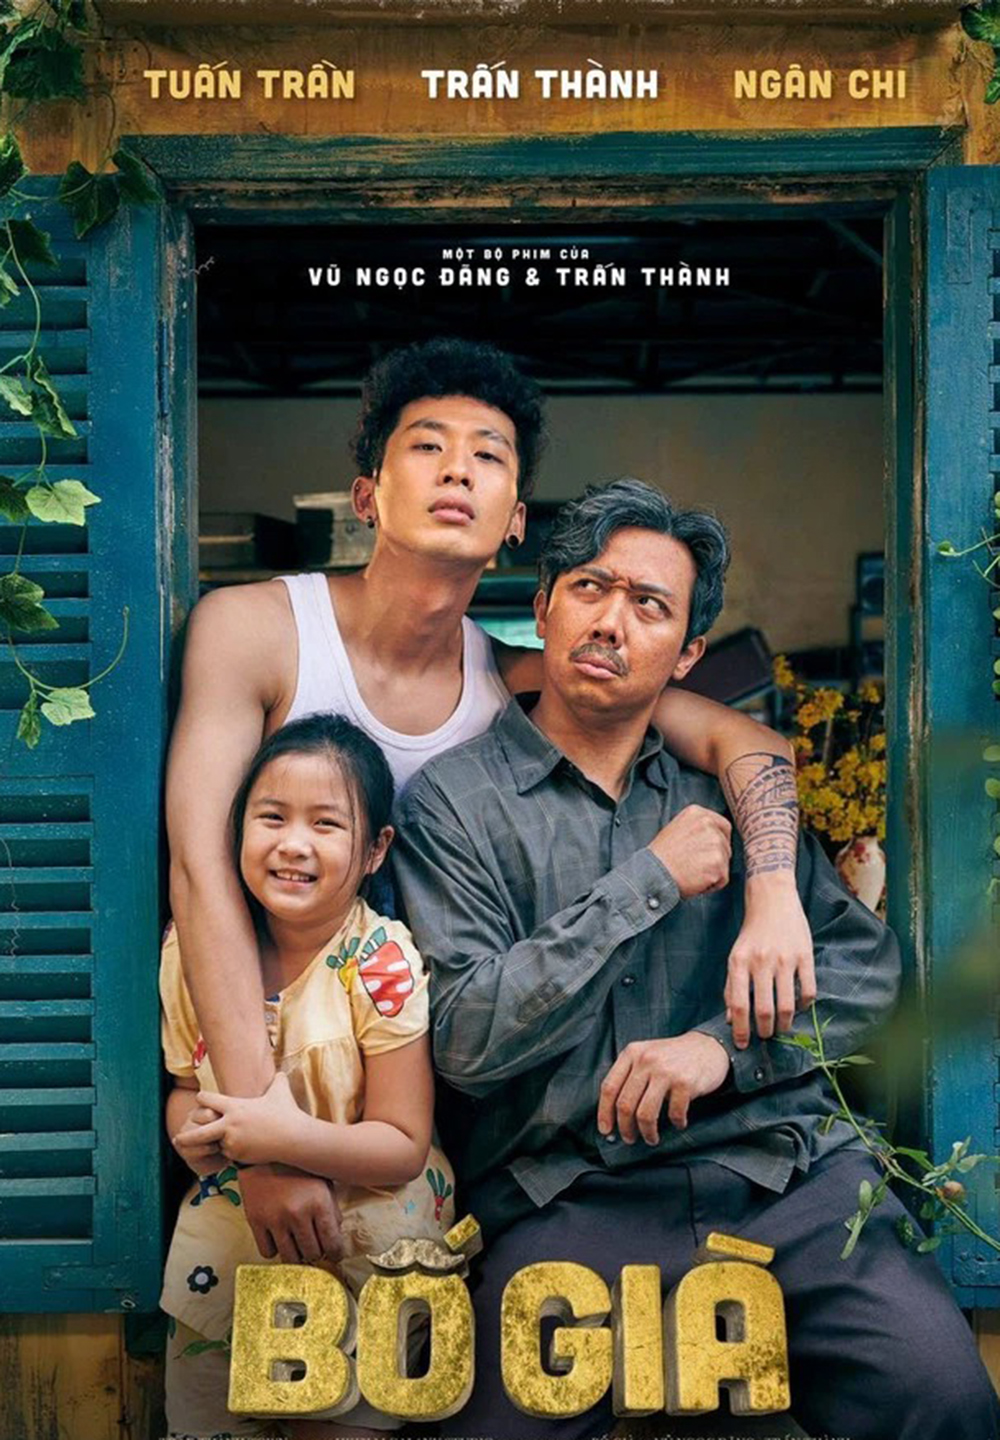 Phim Việt chiếu rạp hay trên Netflix: Bố già - Dad, I'm Sorry (2021)